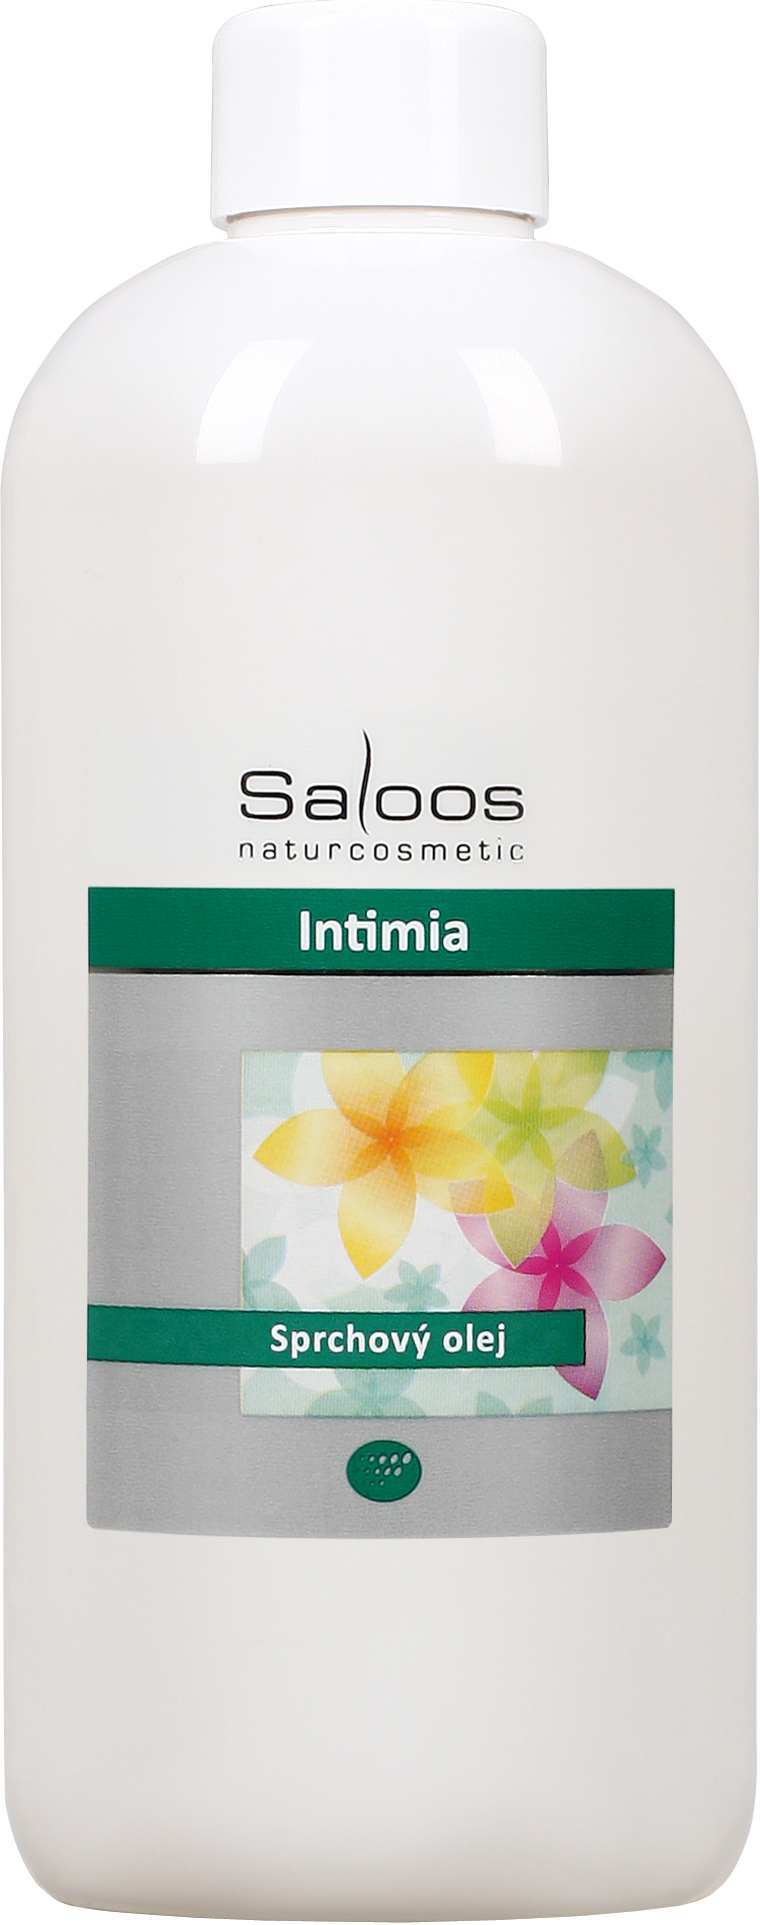 Saloos Intimia - sprchový olej Balení: 500 ml